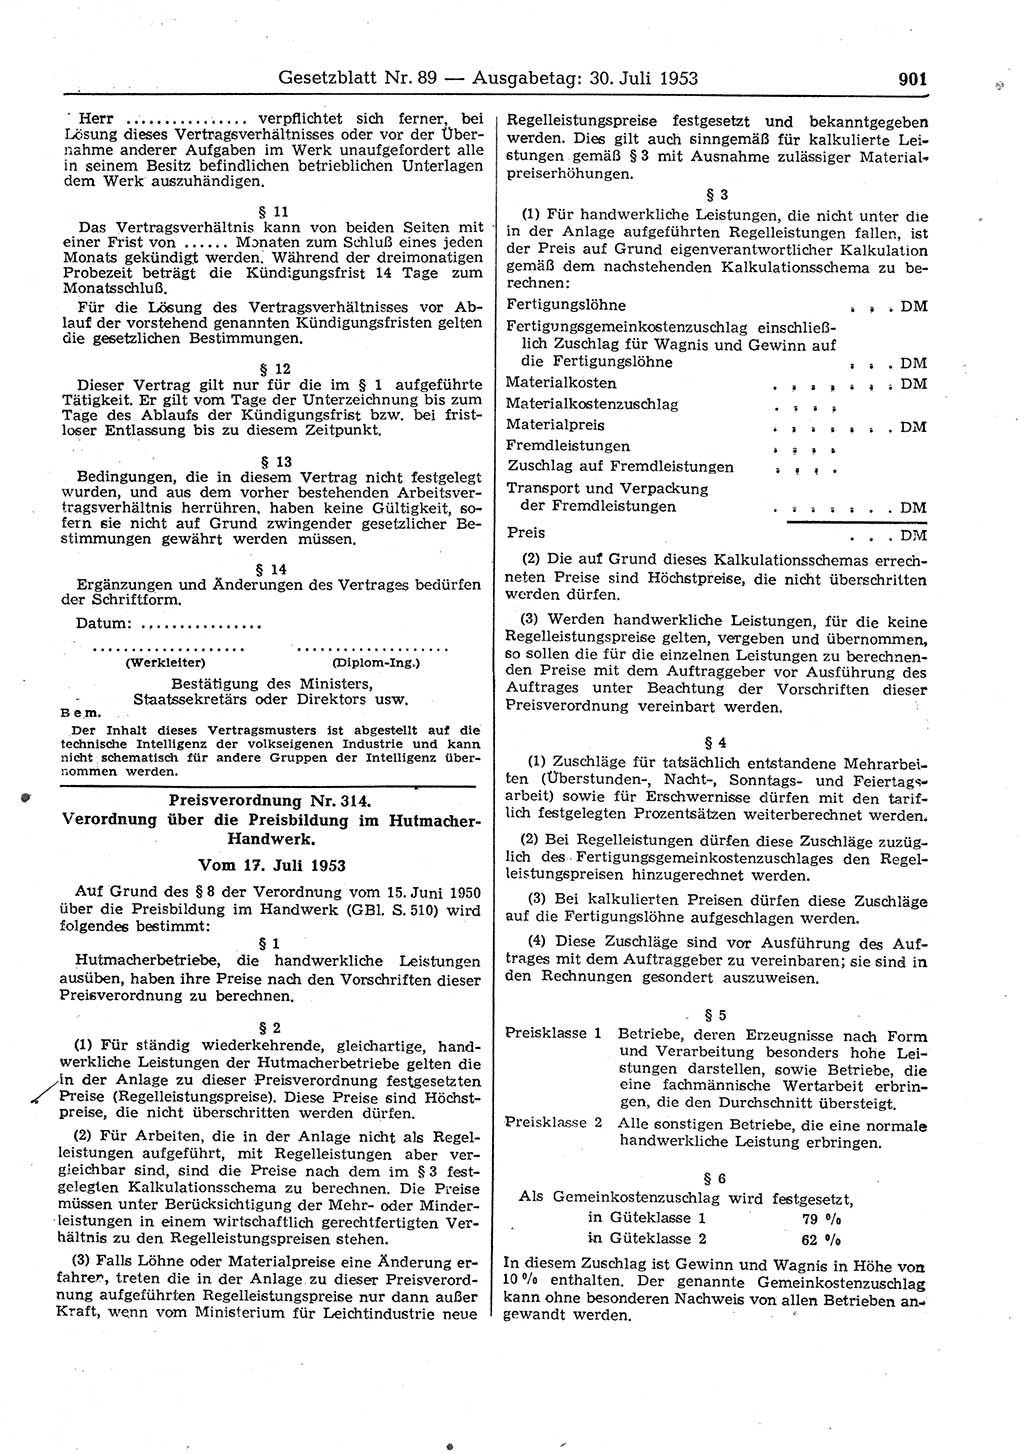 Gesetzblatt (GBl.) der Deutschen Demokratischen Republik (DDR) 1953, Seite 901 (GBl. DDR 1953, S. 901)